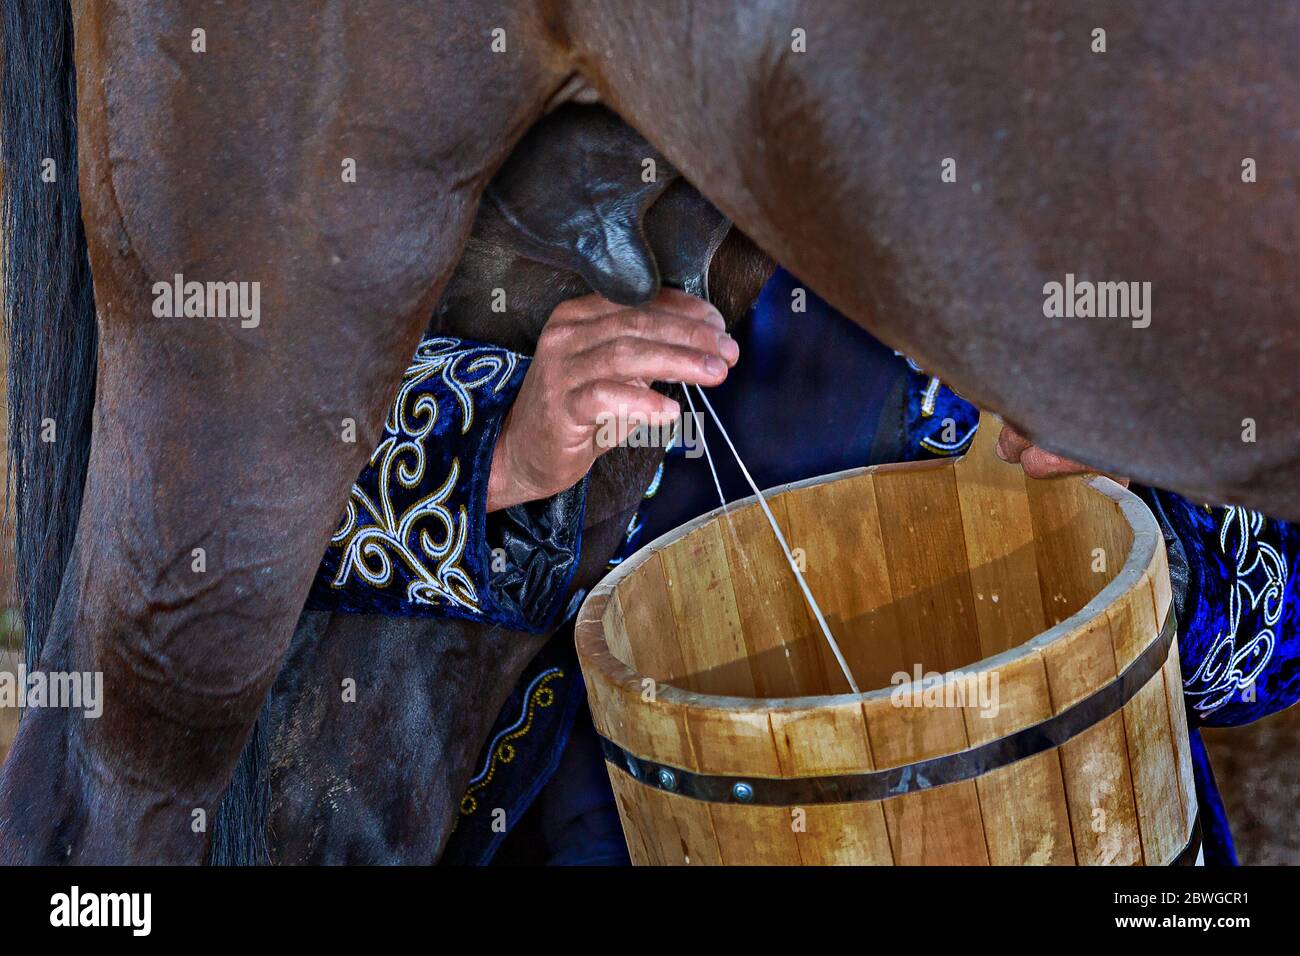 Femme traite le cheval dans un seau en bois, Bichkek, Kirghizistan Banque D'Images